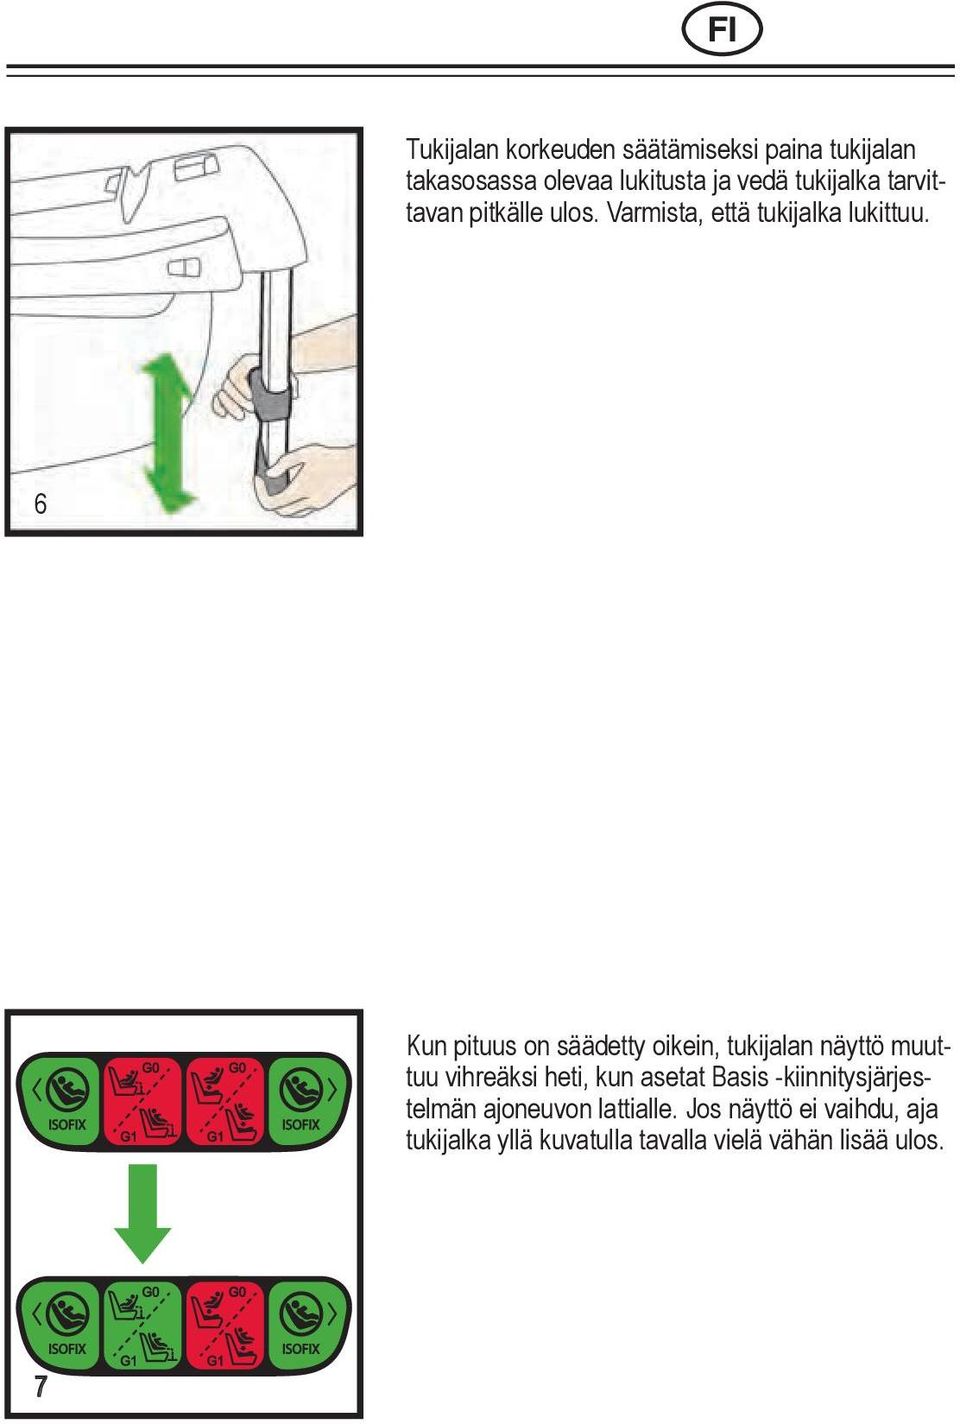 6 Kun pituus on säädetty oikein, tukijalan näyttö muuttuu vihreäksi heti, kun asetat Basis